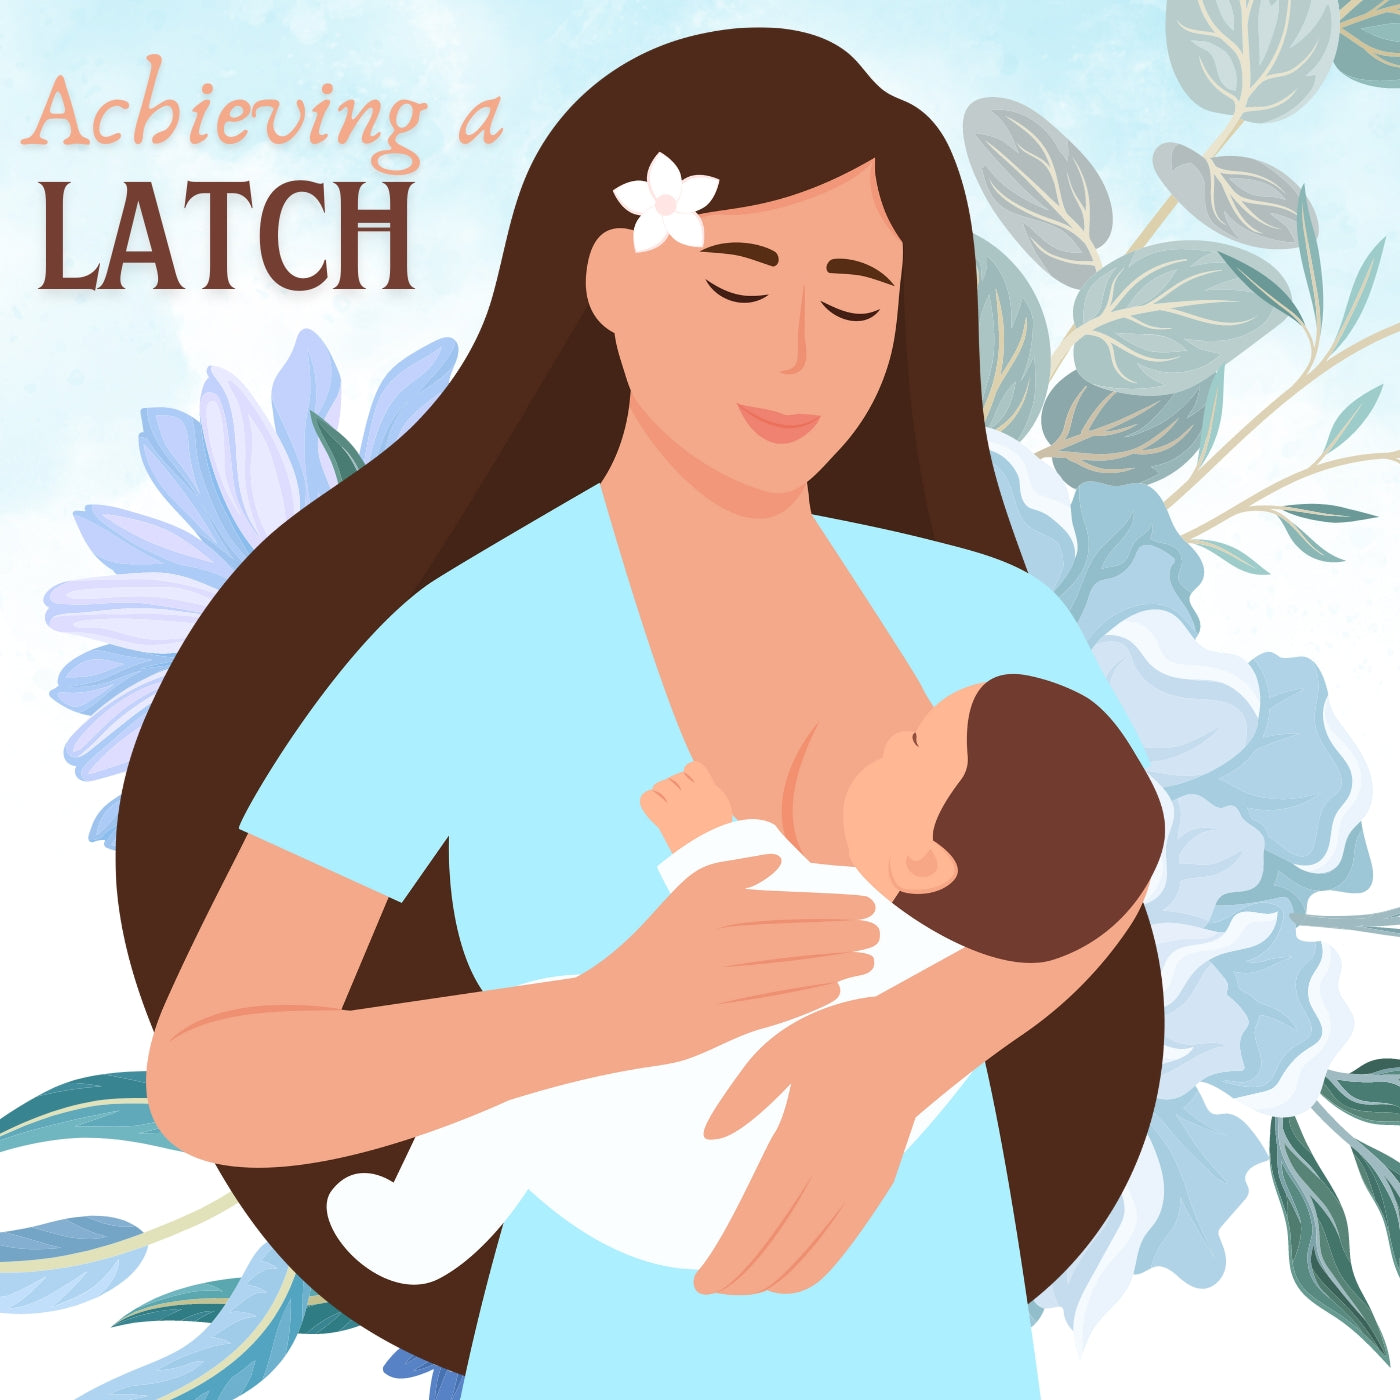 Breastfeeding - Achieving a Latch